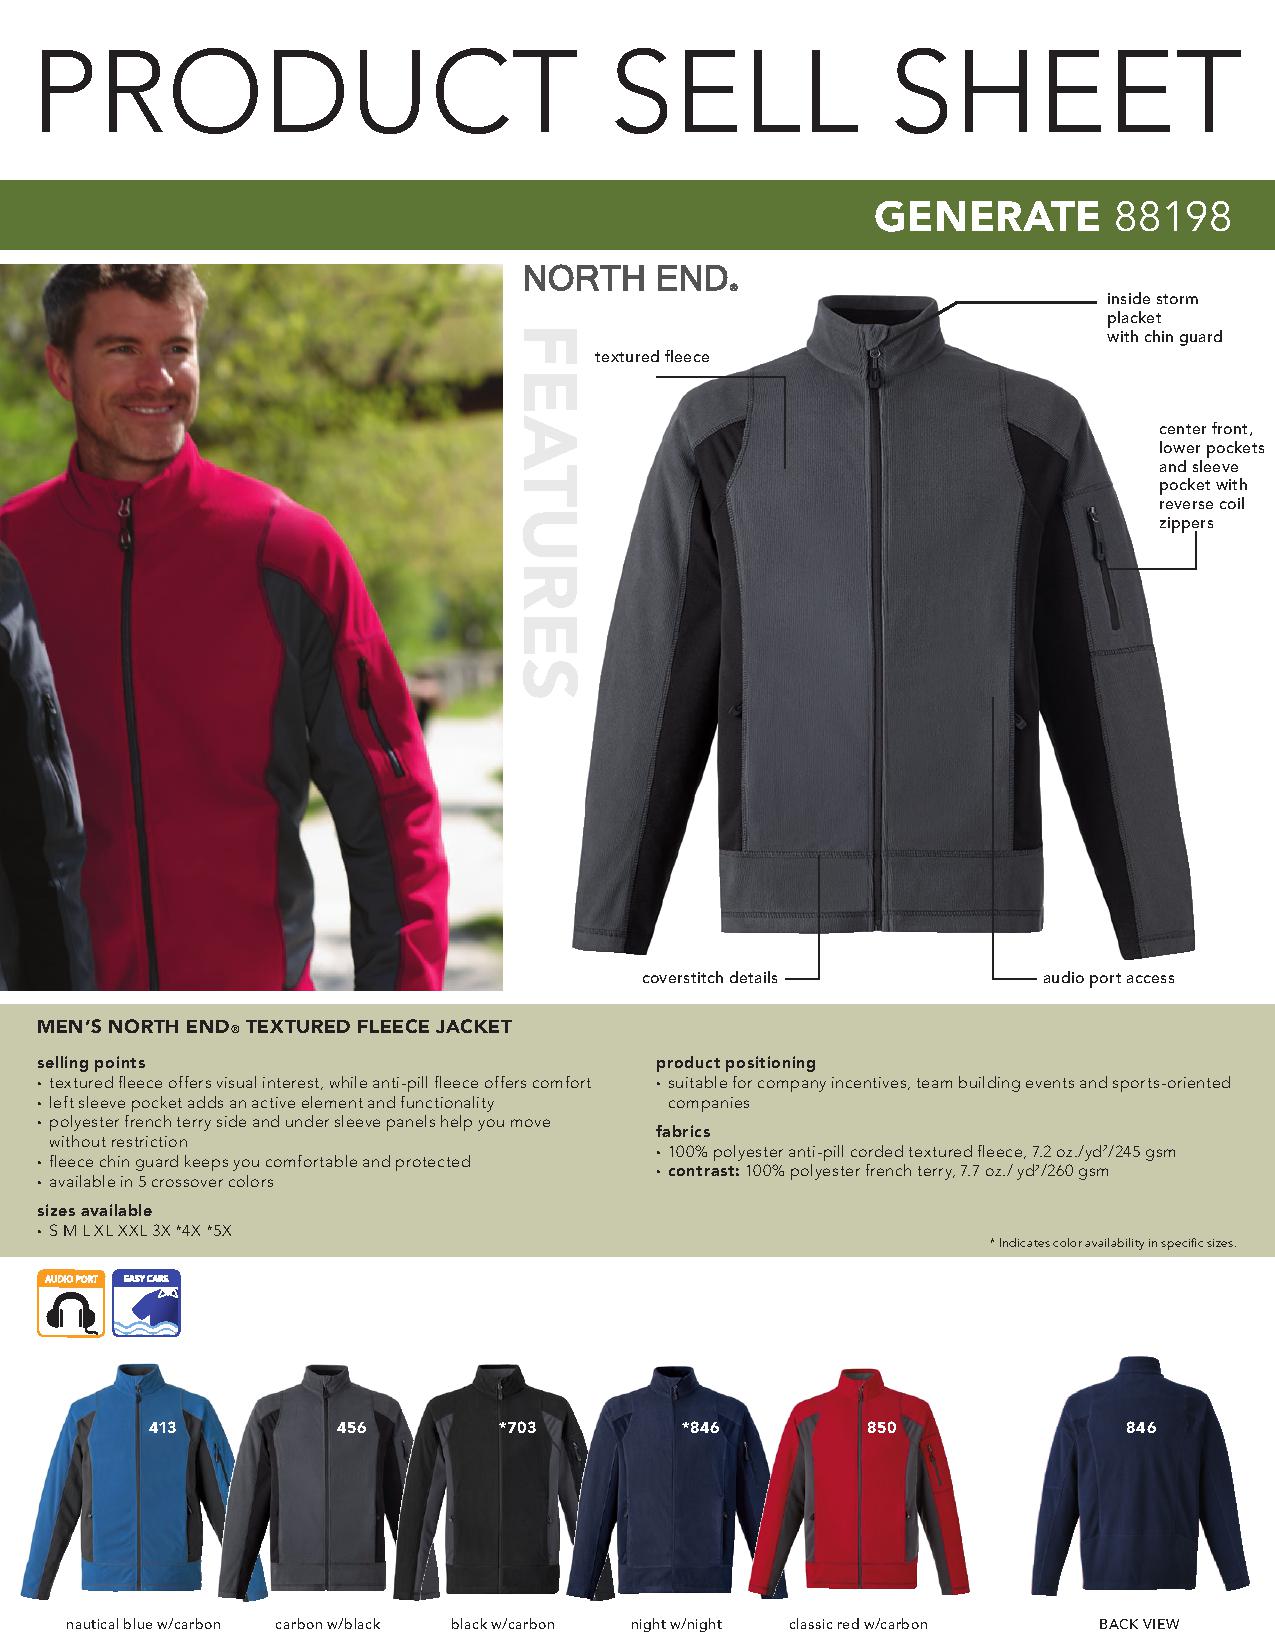 Ash City Cotton/Poly Fleece 88198 - Generate Men's Textured Fleece Jacket